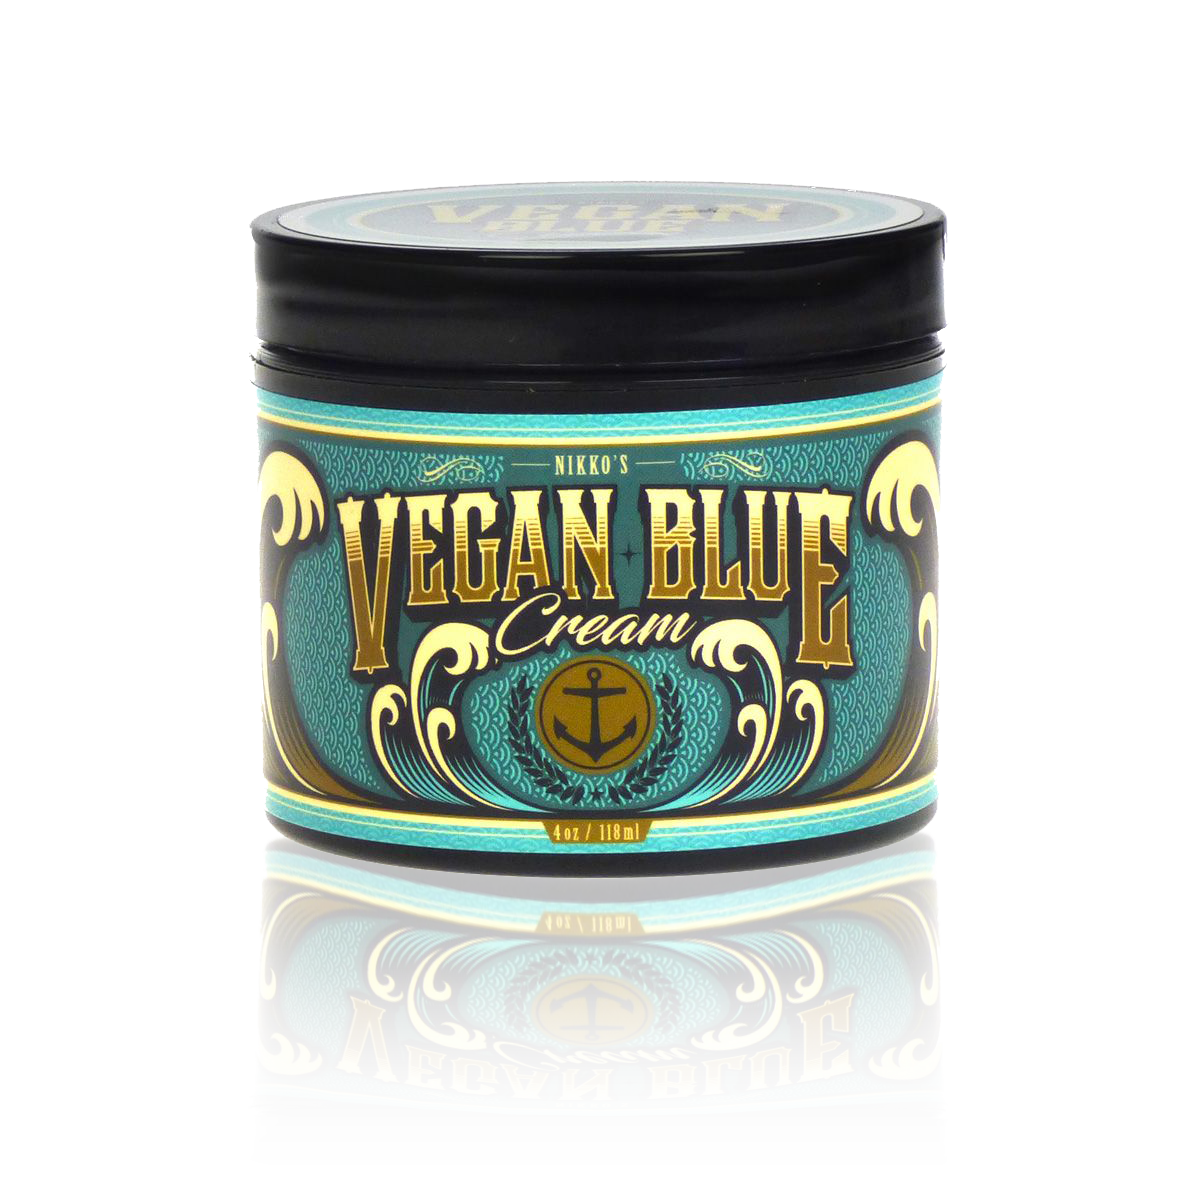 Vegan Blue Cream